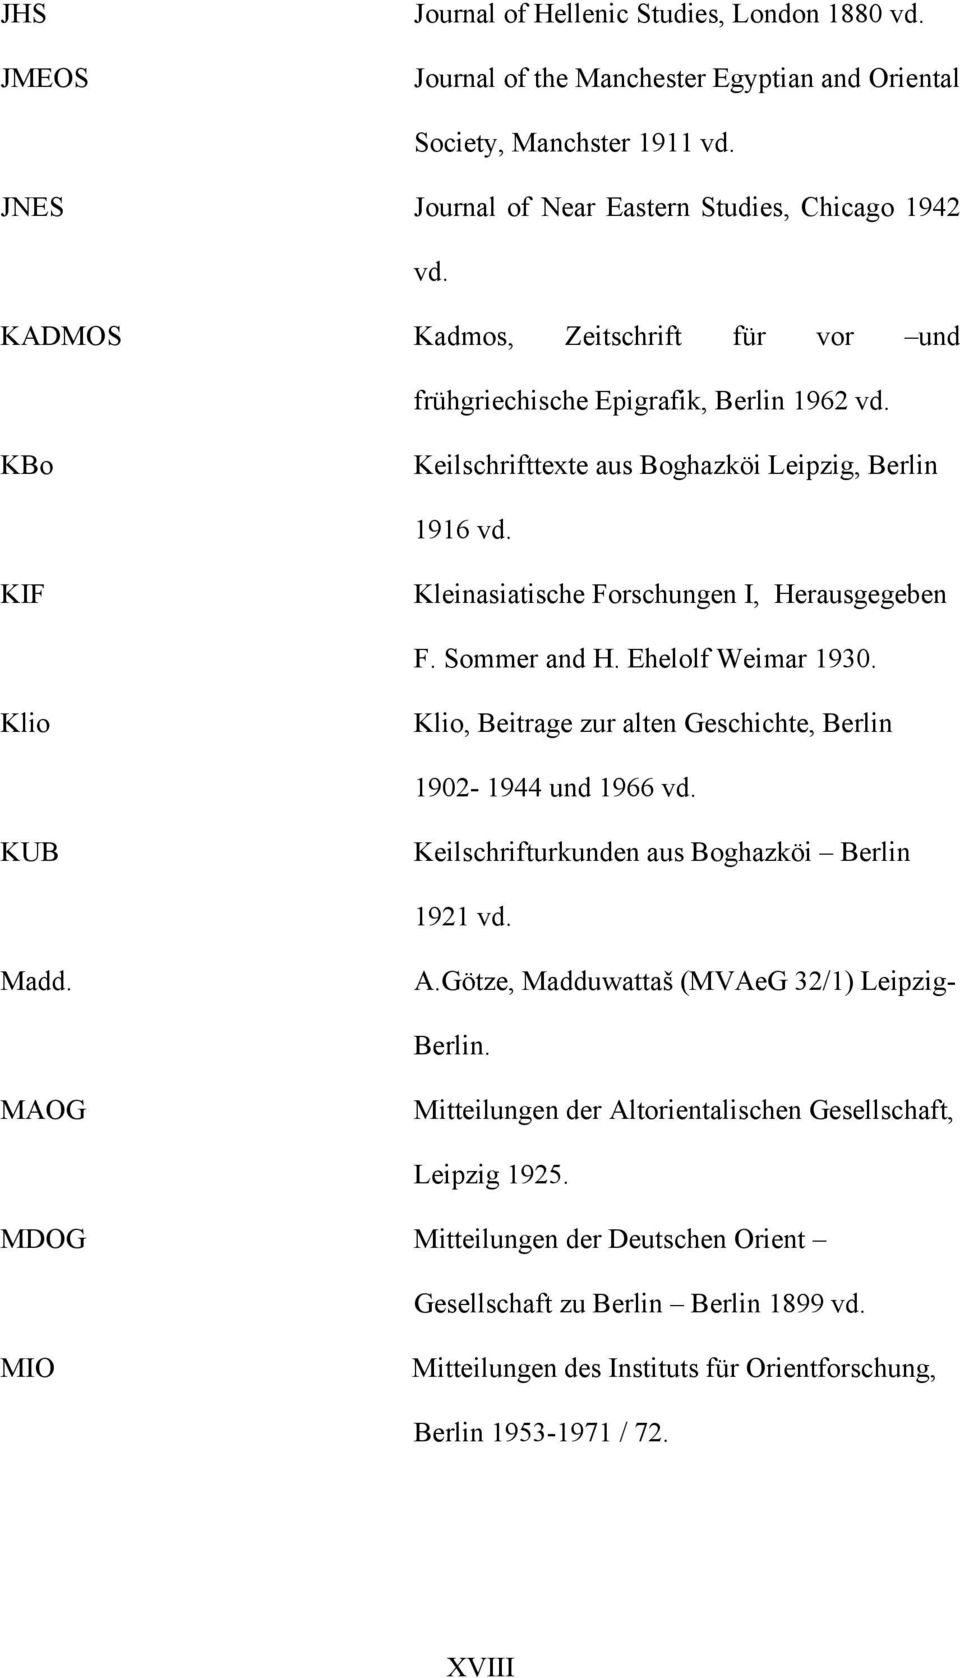 Sommer and H. Ehelolf Weimar 1930. Klio Klio, Beitrage zur alten Geschichte, Berlin 1902-1944 und 1966 vd. KUB Keilschrifturkunden aus Boghazköi Berlin 1921 vd. Madd. A.